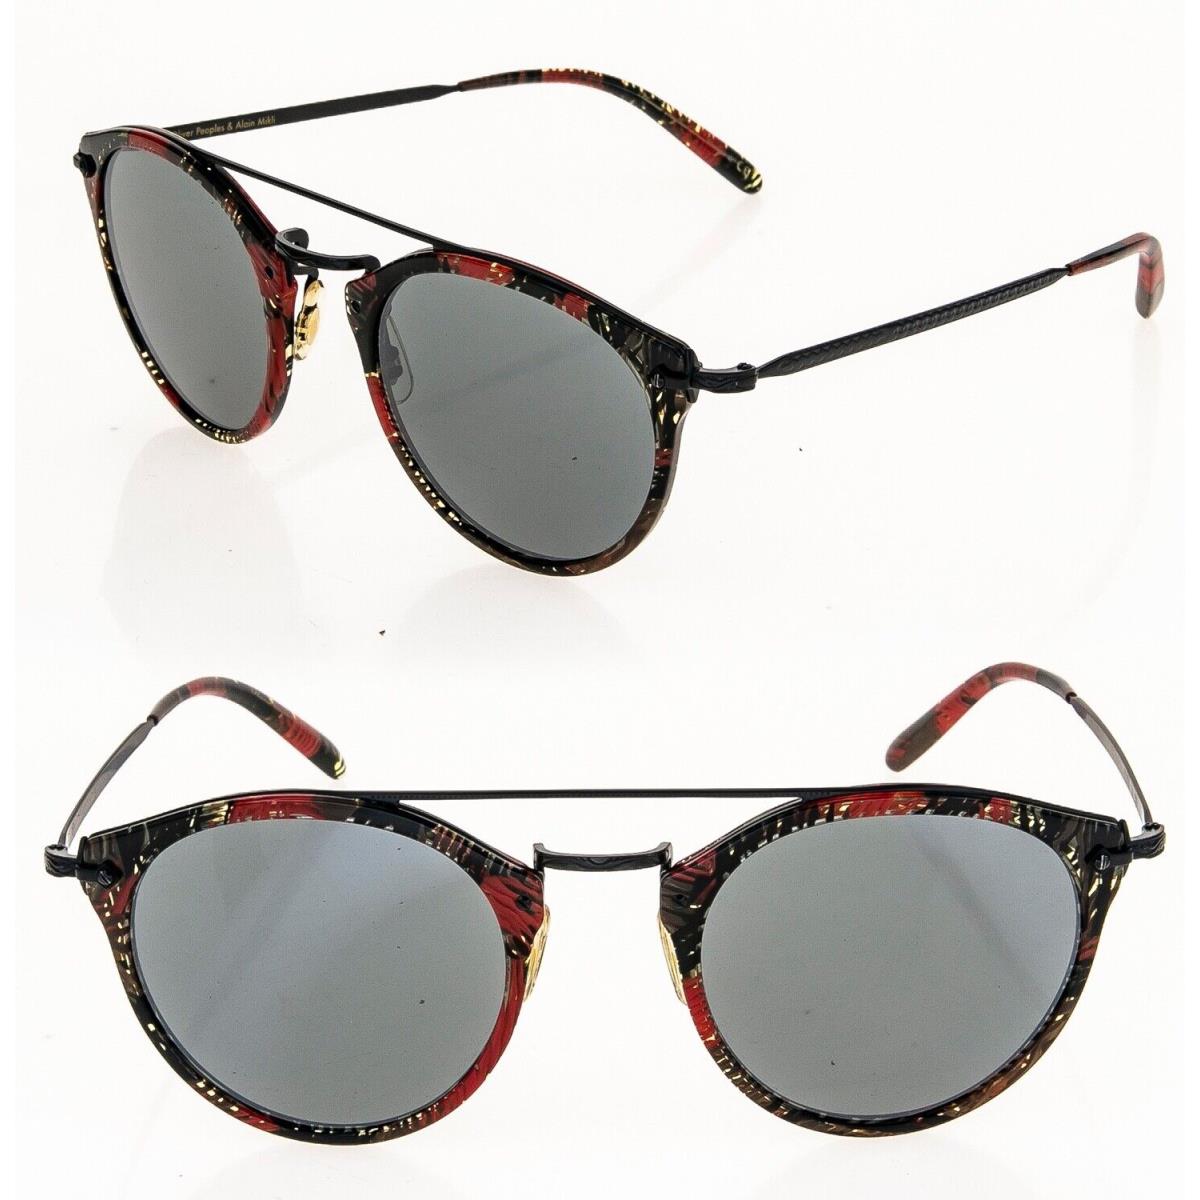 Oliver Peoples Alain Mikli Remick Sunglasses OV5349S Black Palmier Red 5349 - Frame: Black, Lens: Black